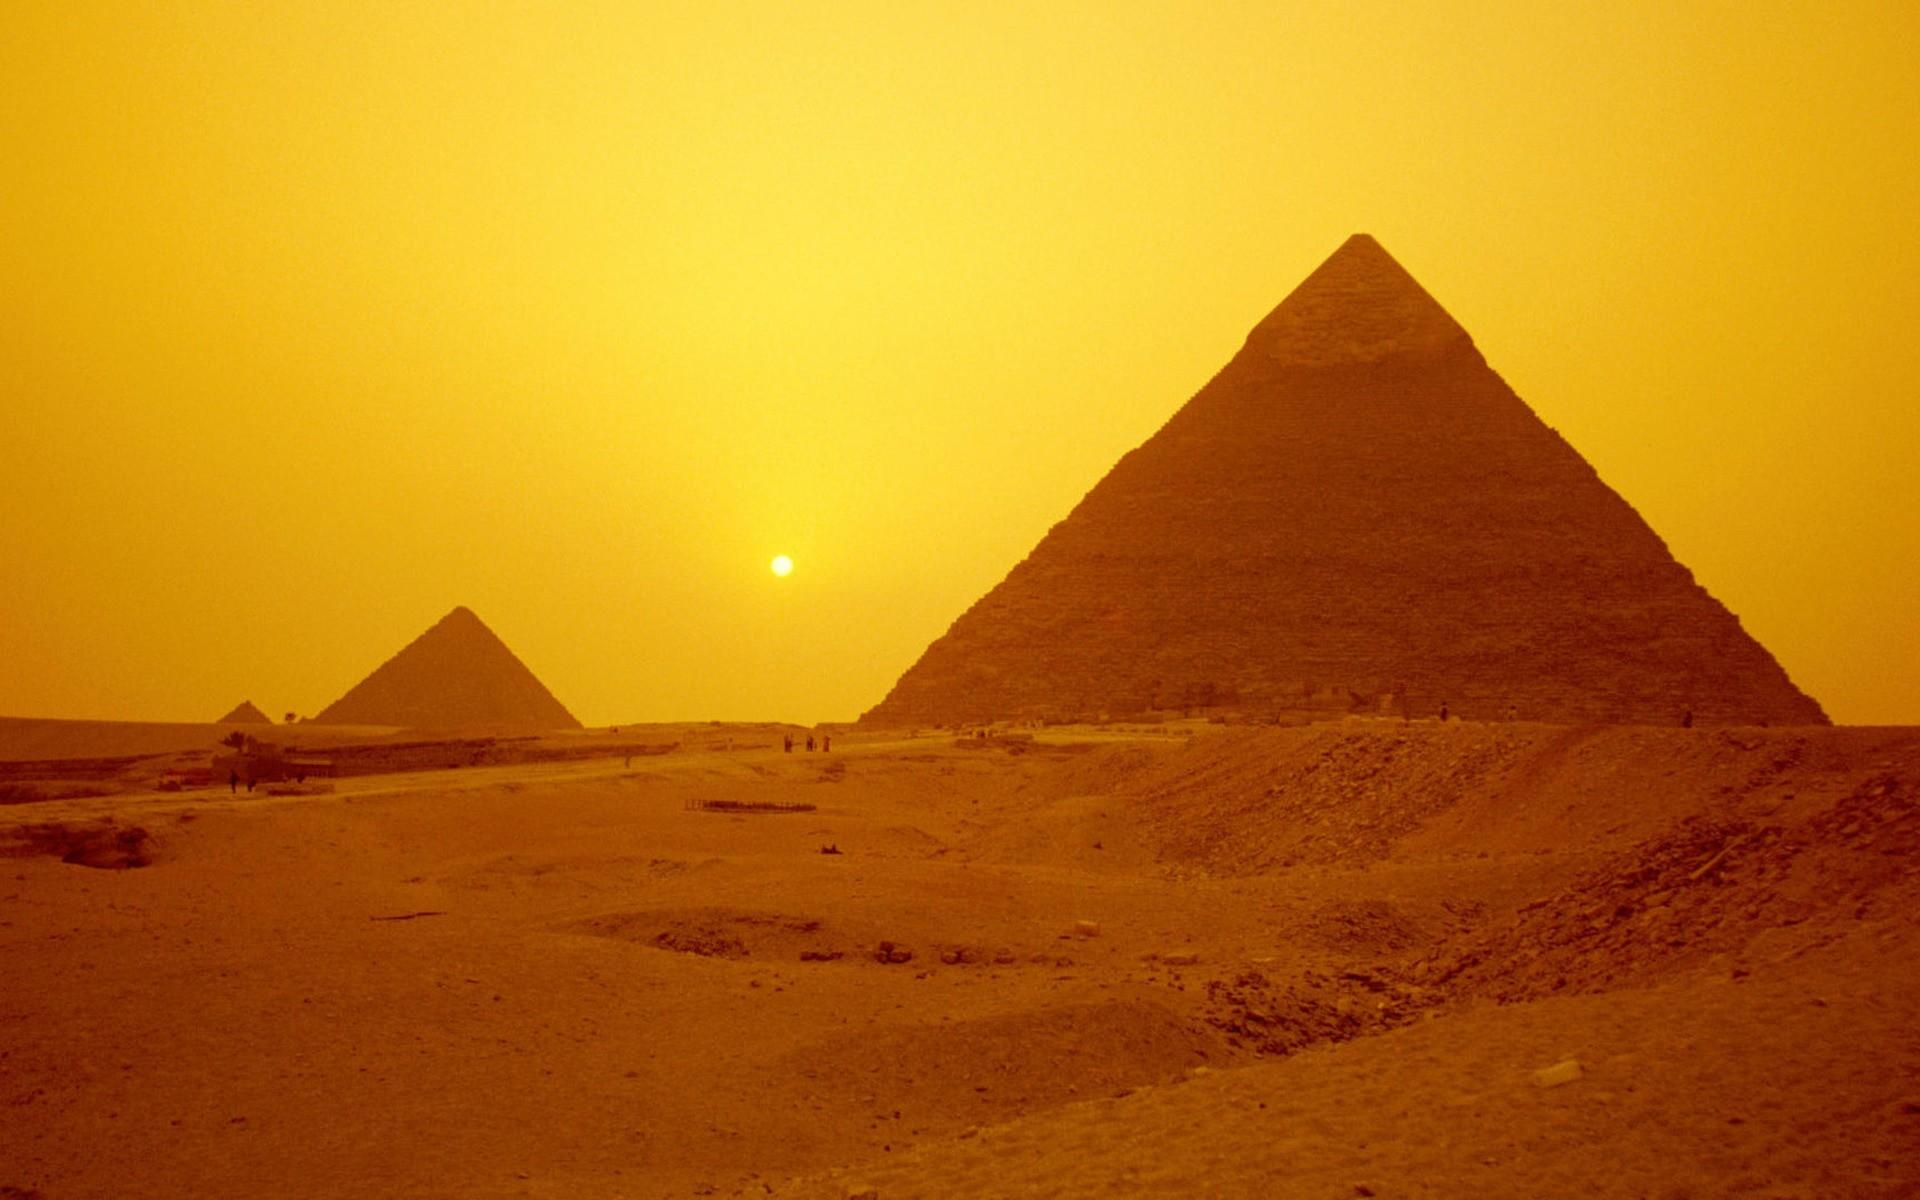 Architecture egypt pyramids wallpaper. PC